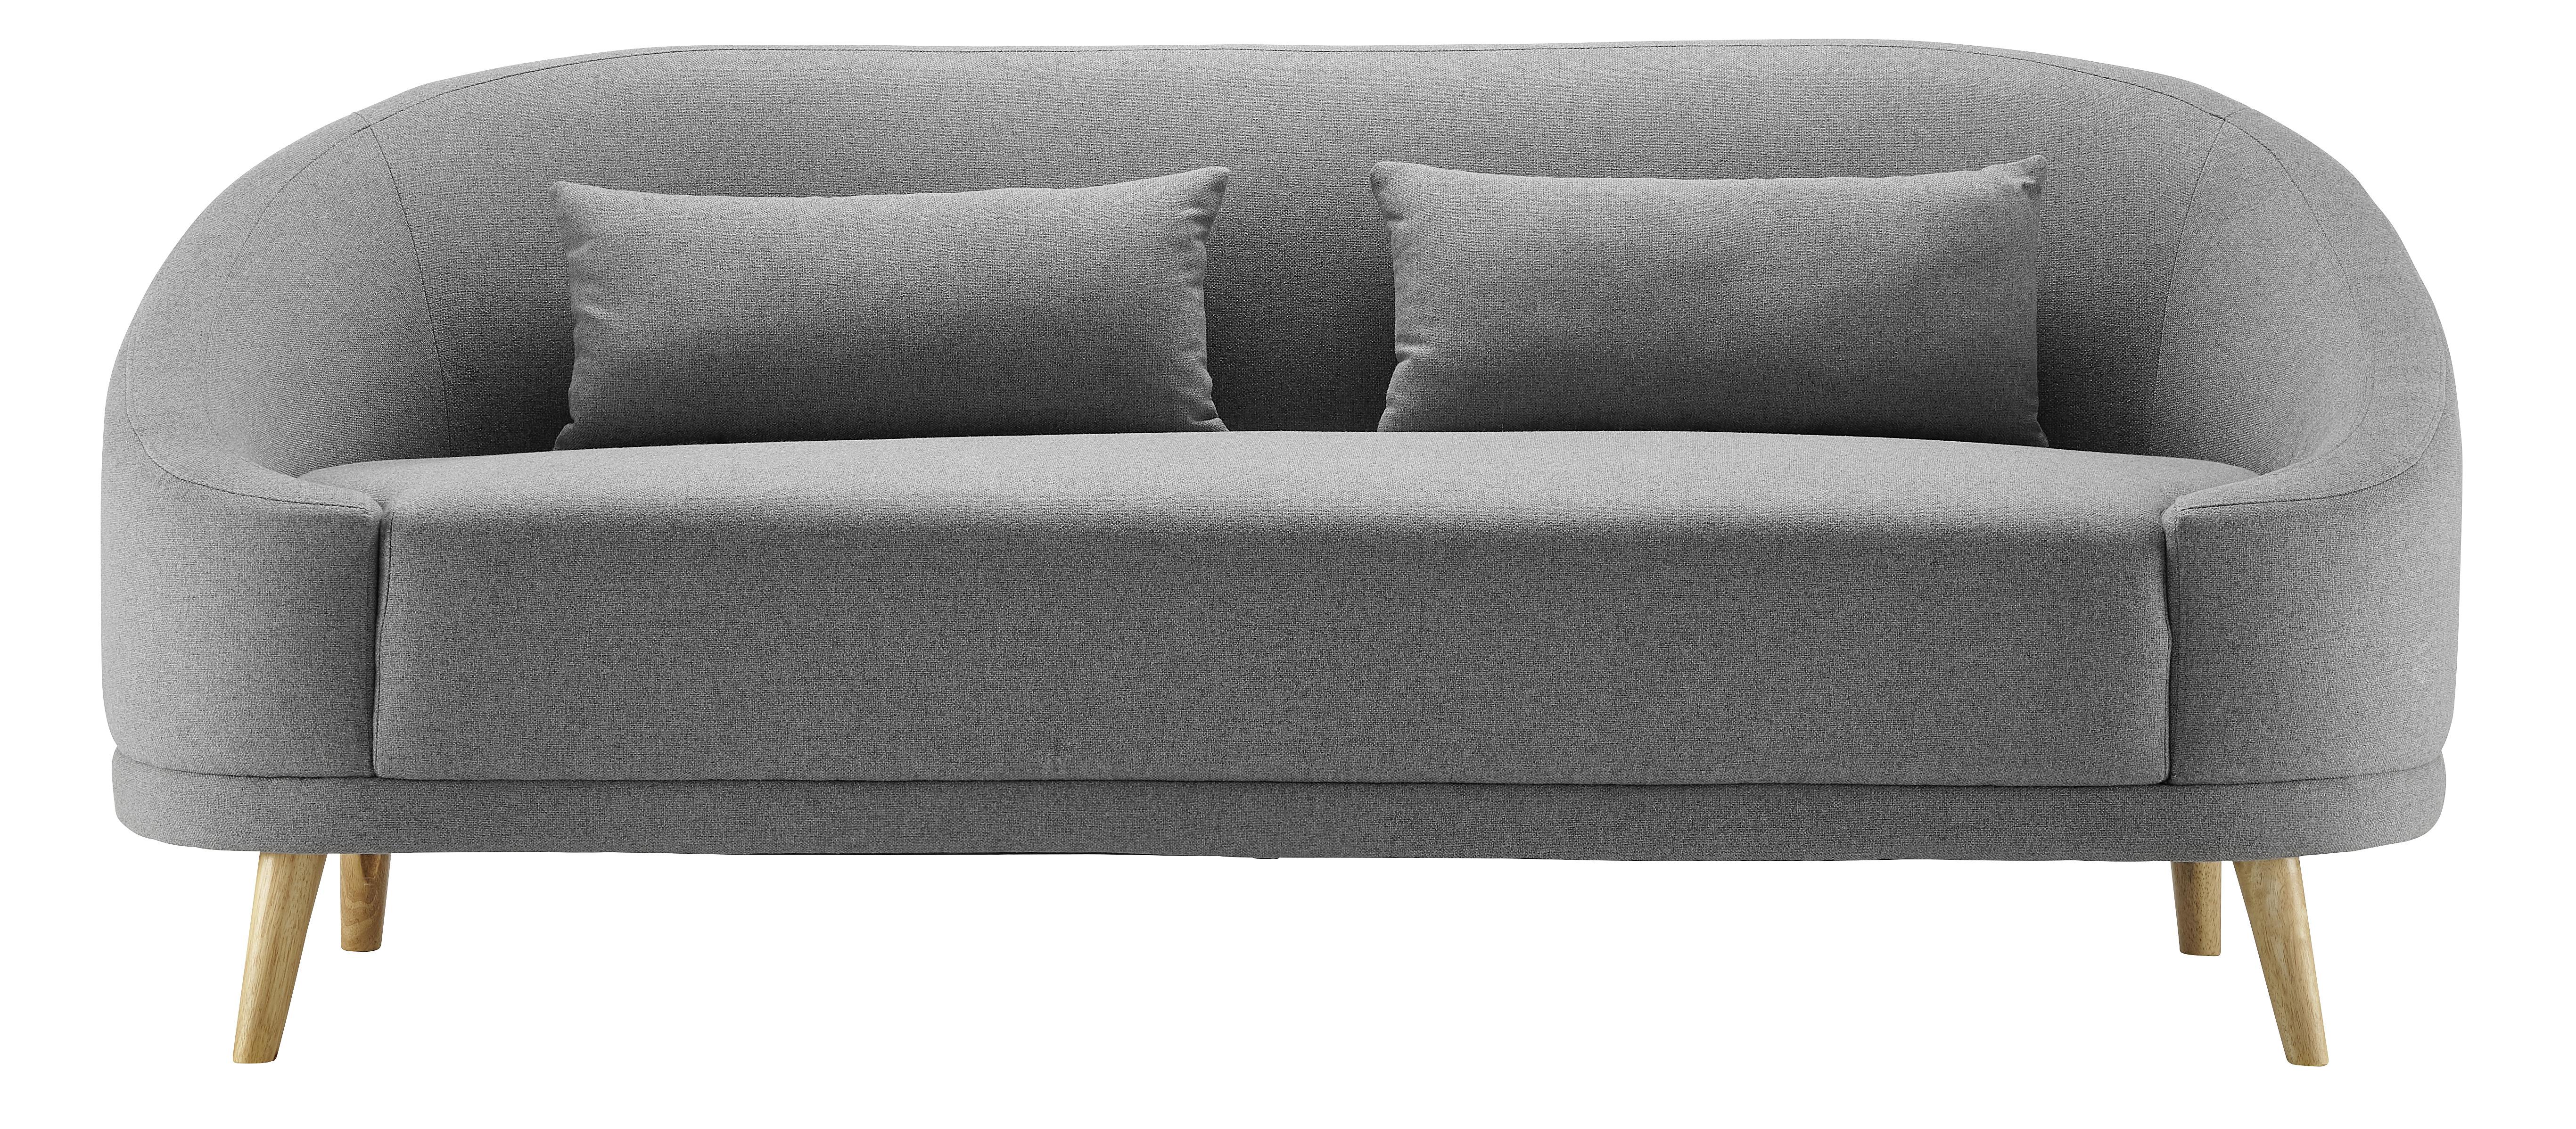 Pohovka Jannike - tmavě šedá, Moderní, dřevo/textil (207/84/80cm) - Modern Living